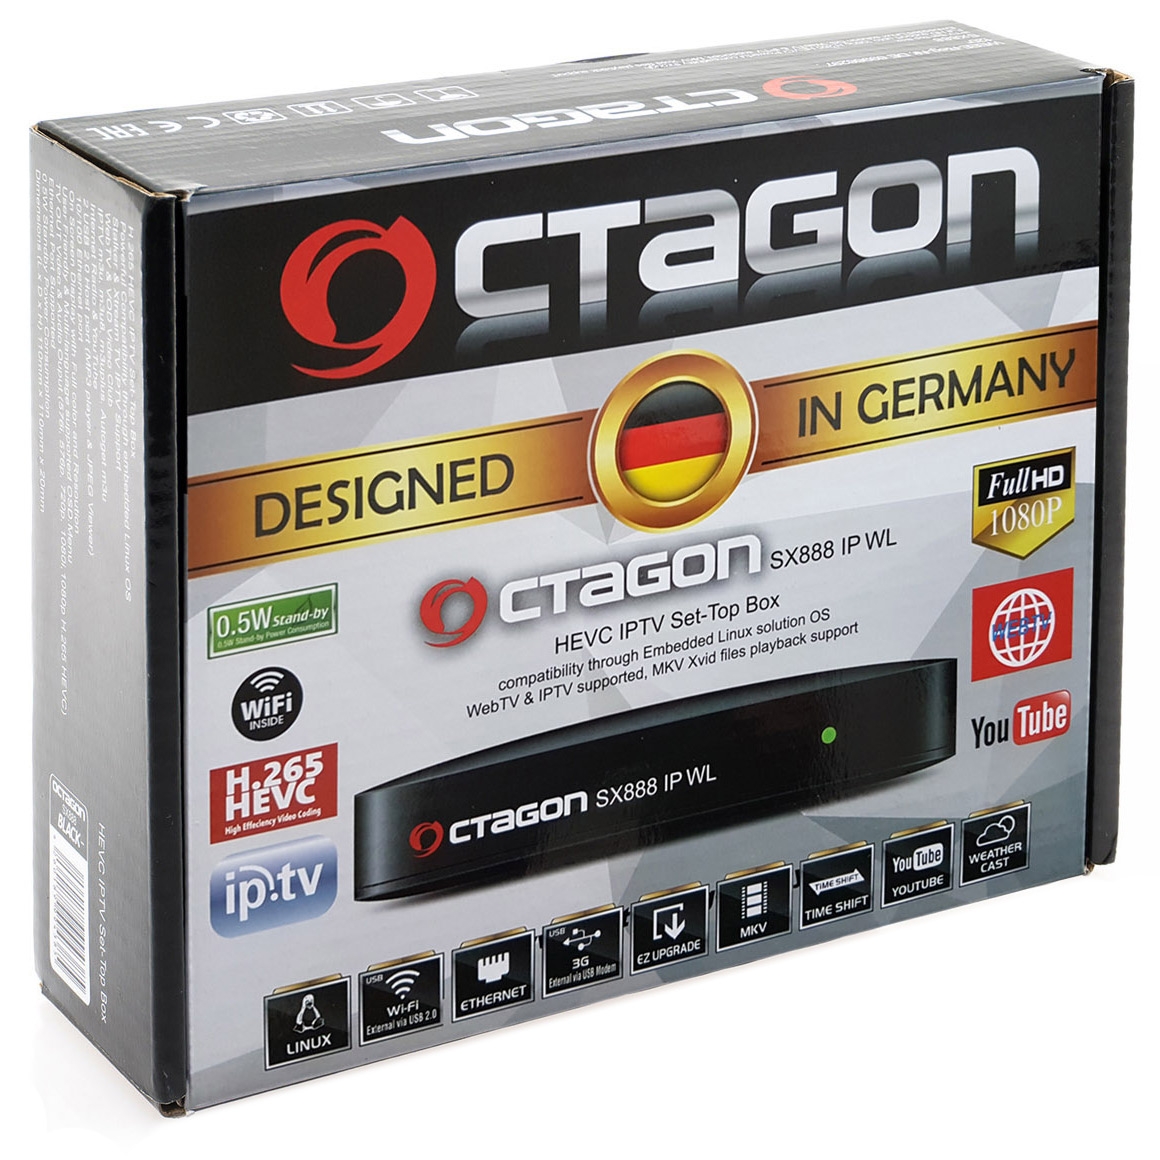 Octagon SX888 WL Wifi IP HEVC Full HD LAN USB H.265 IPTV m3u VOD Stalker Xtream Multimedia Box